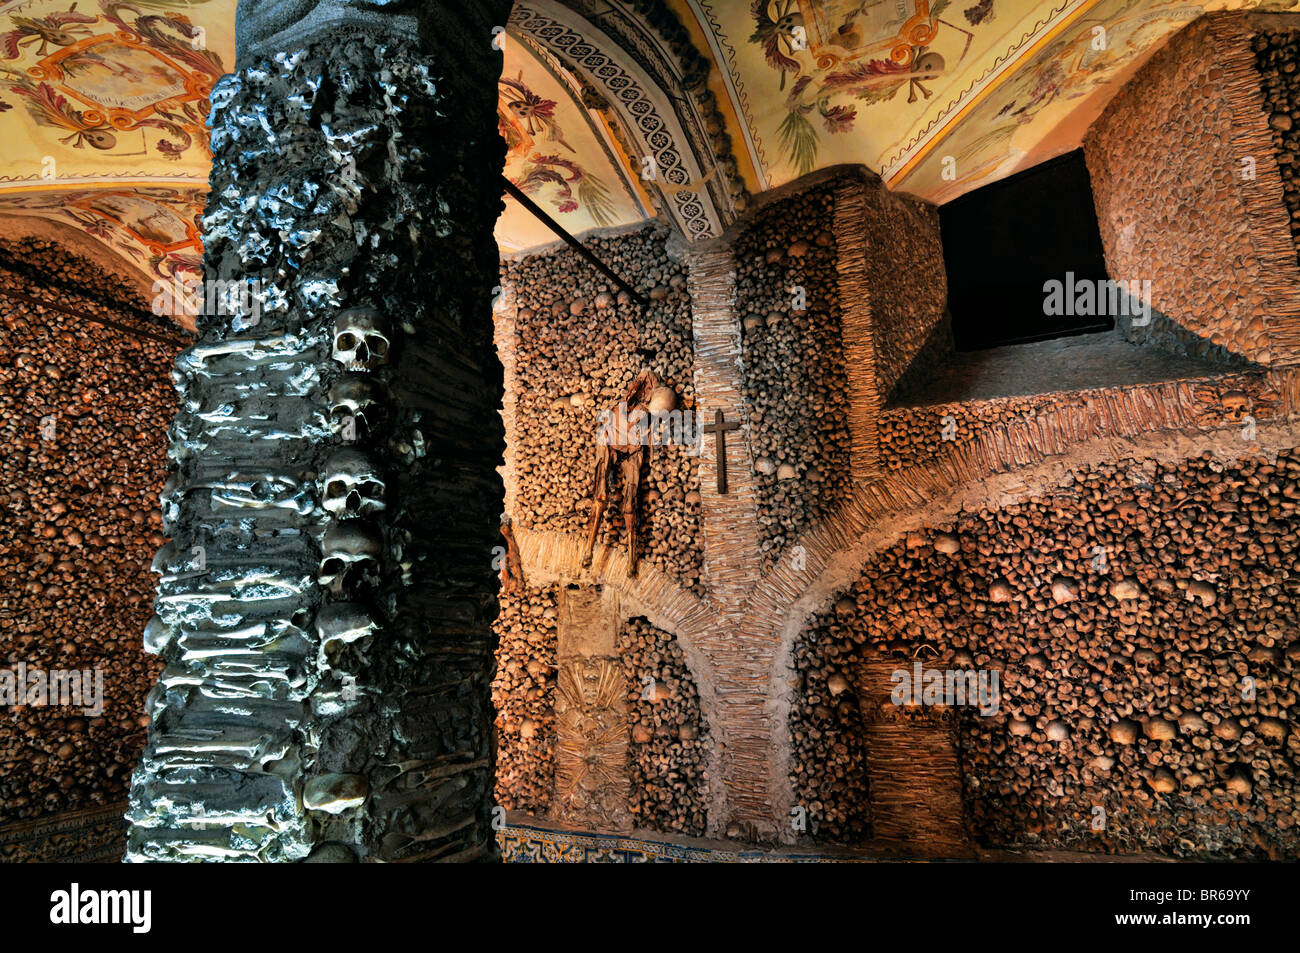 Portugal, Alentejo: Interior of the bone chapel Capela dos Ossos in Évora Stock Photo